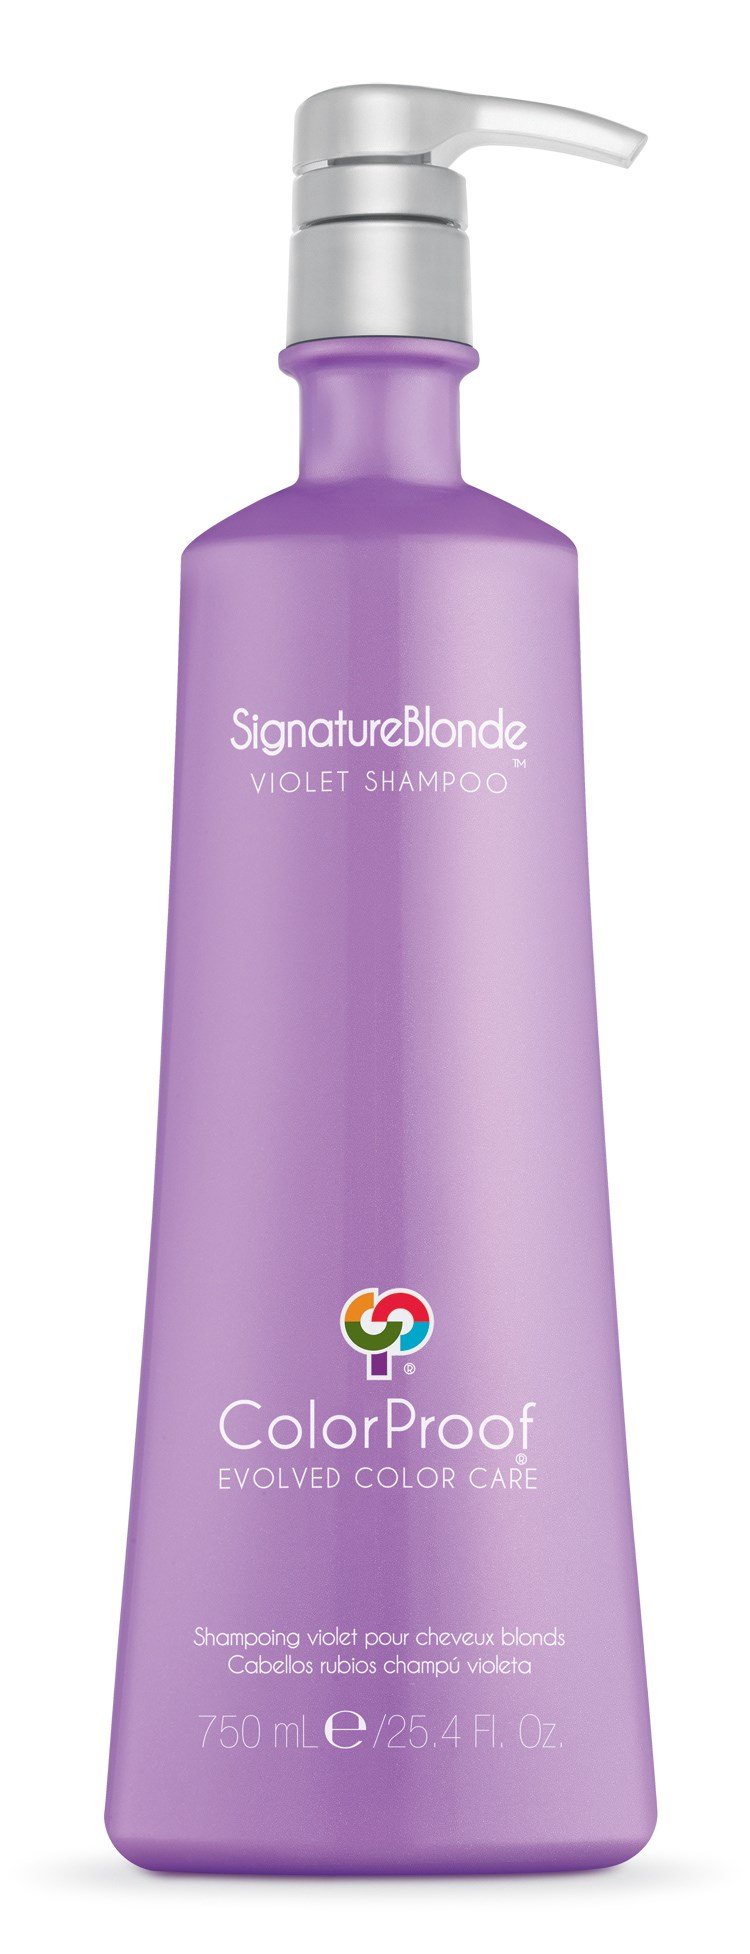 SignatureBlonde Violet Shampoo